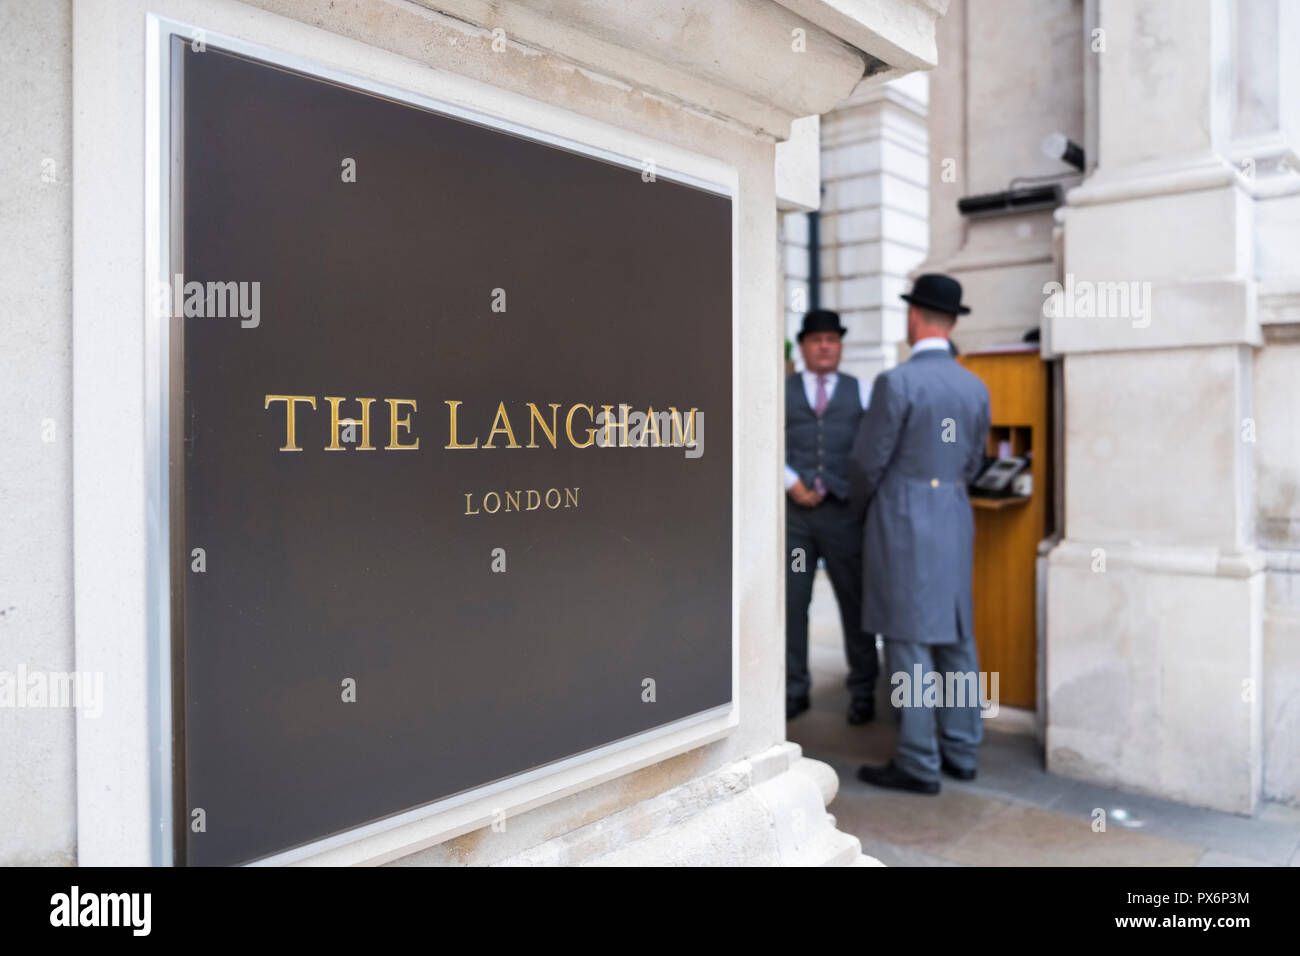 Signe de la plaque signalétique de l'hôtel Langham dans W1, Londres, Angleterre, Royaume-Uni, avec deux porteurs à l'extérieur portant le traditionnel chapeau melon Banque D'Images